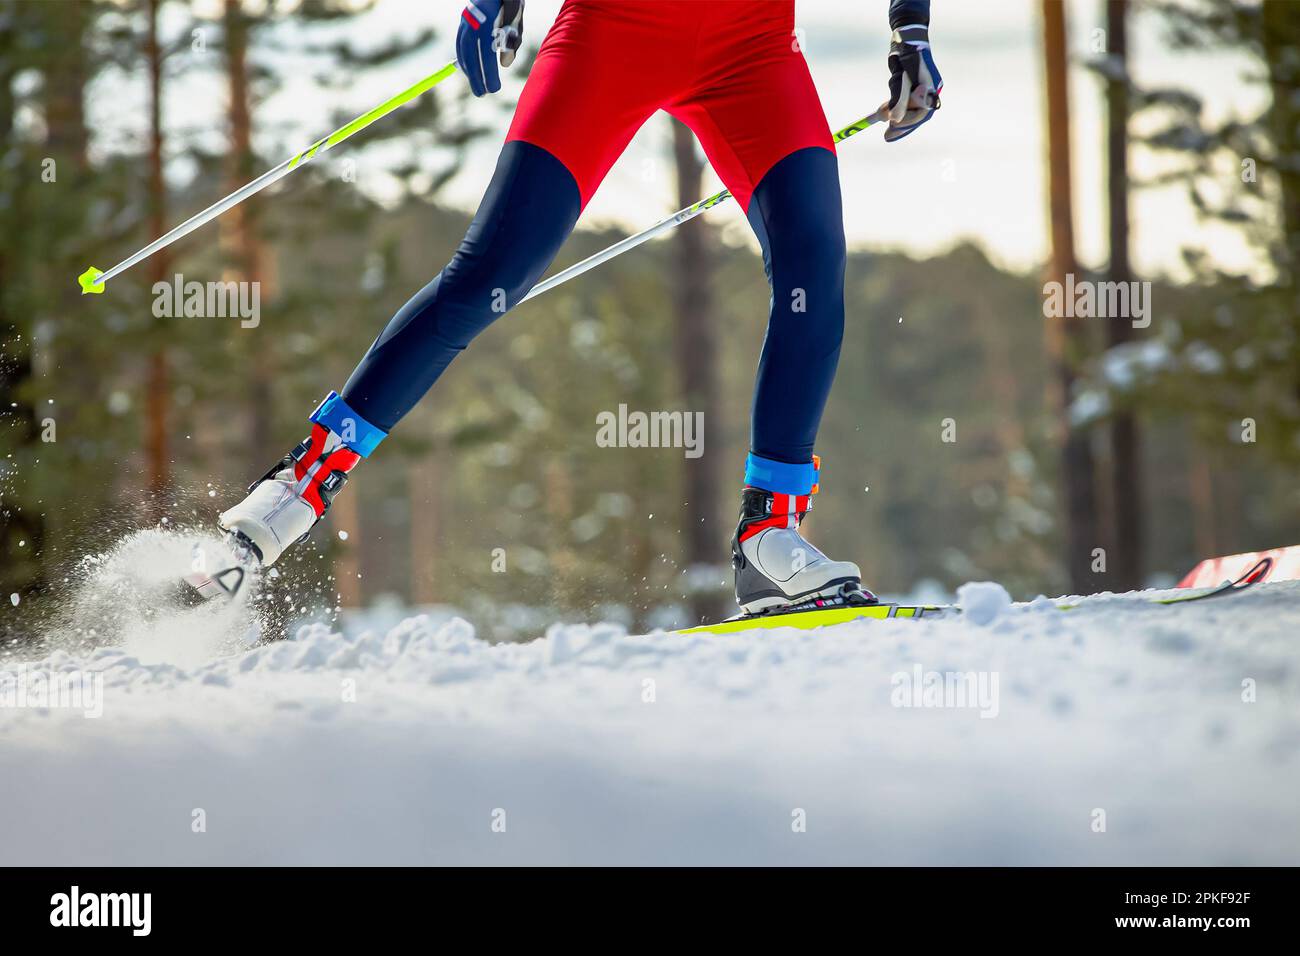 Beine Skifahrer auf der Skipiste, Schneespritzer unter Skiern und Stöcken, Wintersportwettbewerb Stockfoto